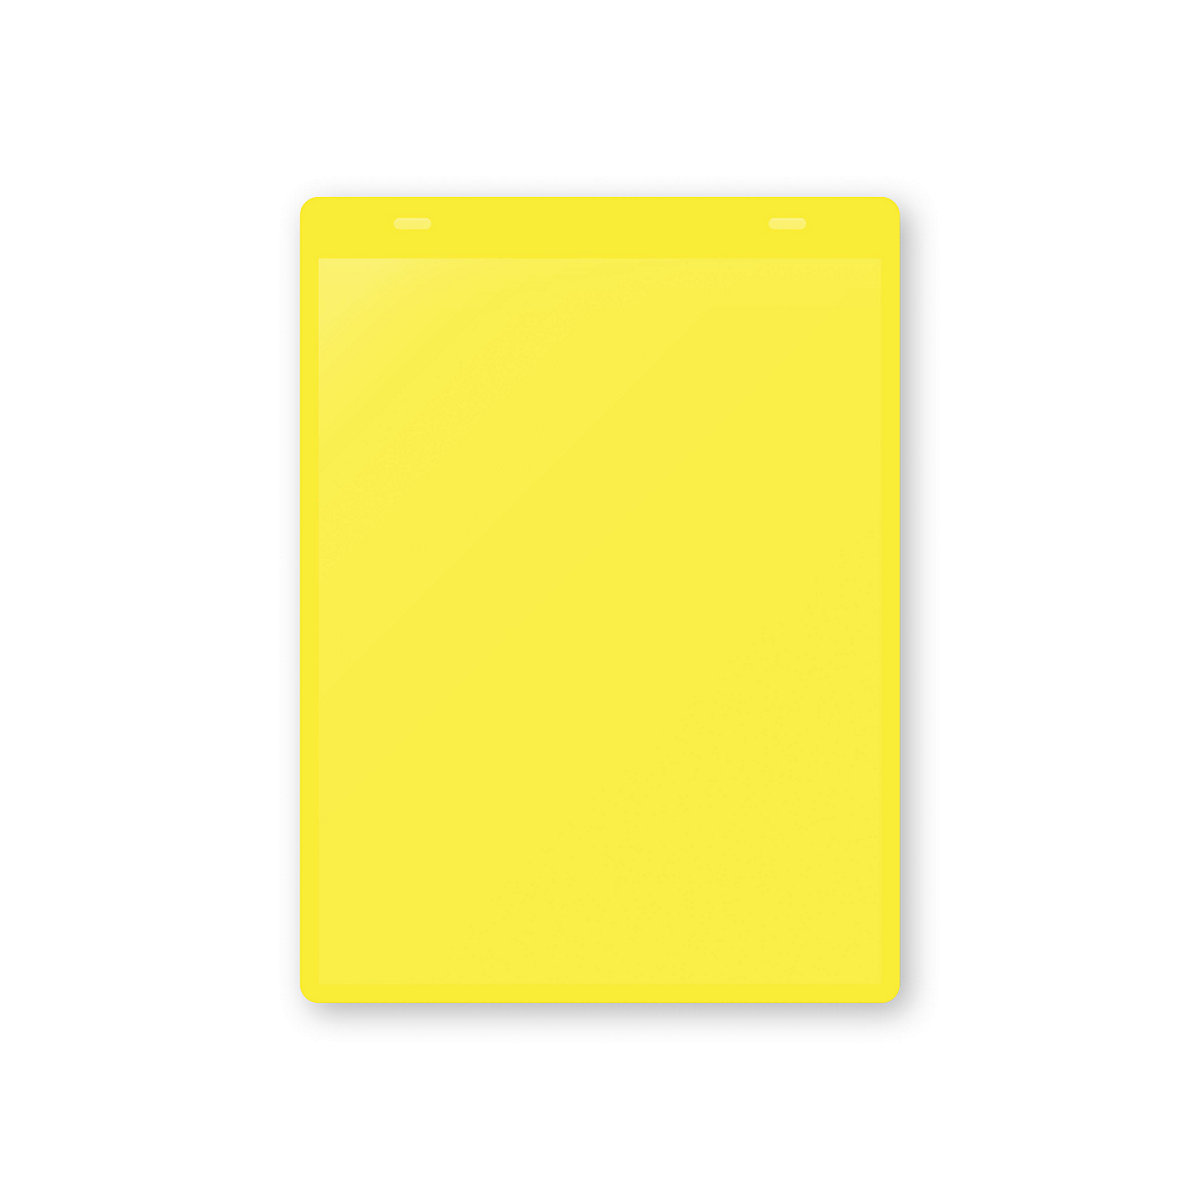 Dokumentumtartó tasakok akasztópánttal, DIN A5, álló, cs. e. 50 db, sárga